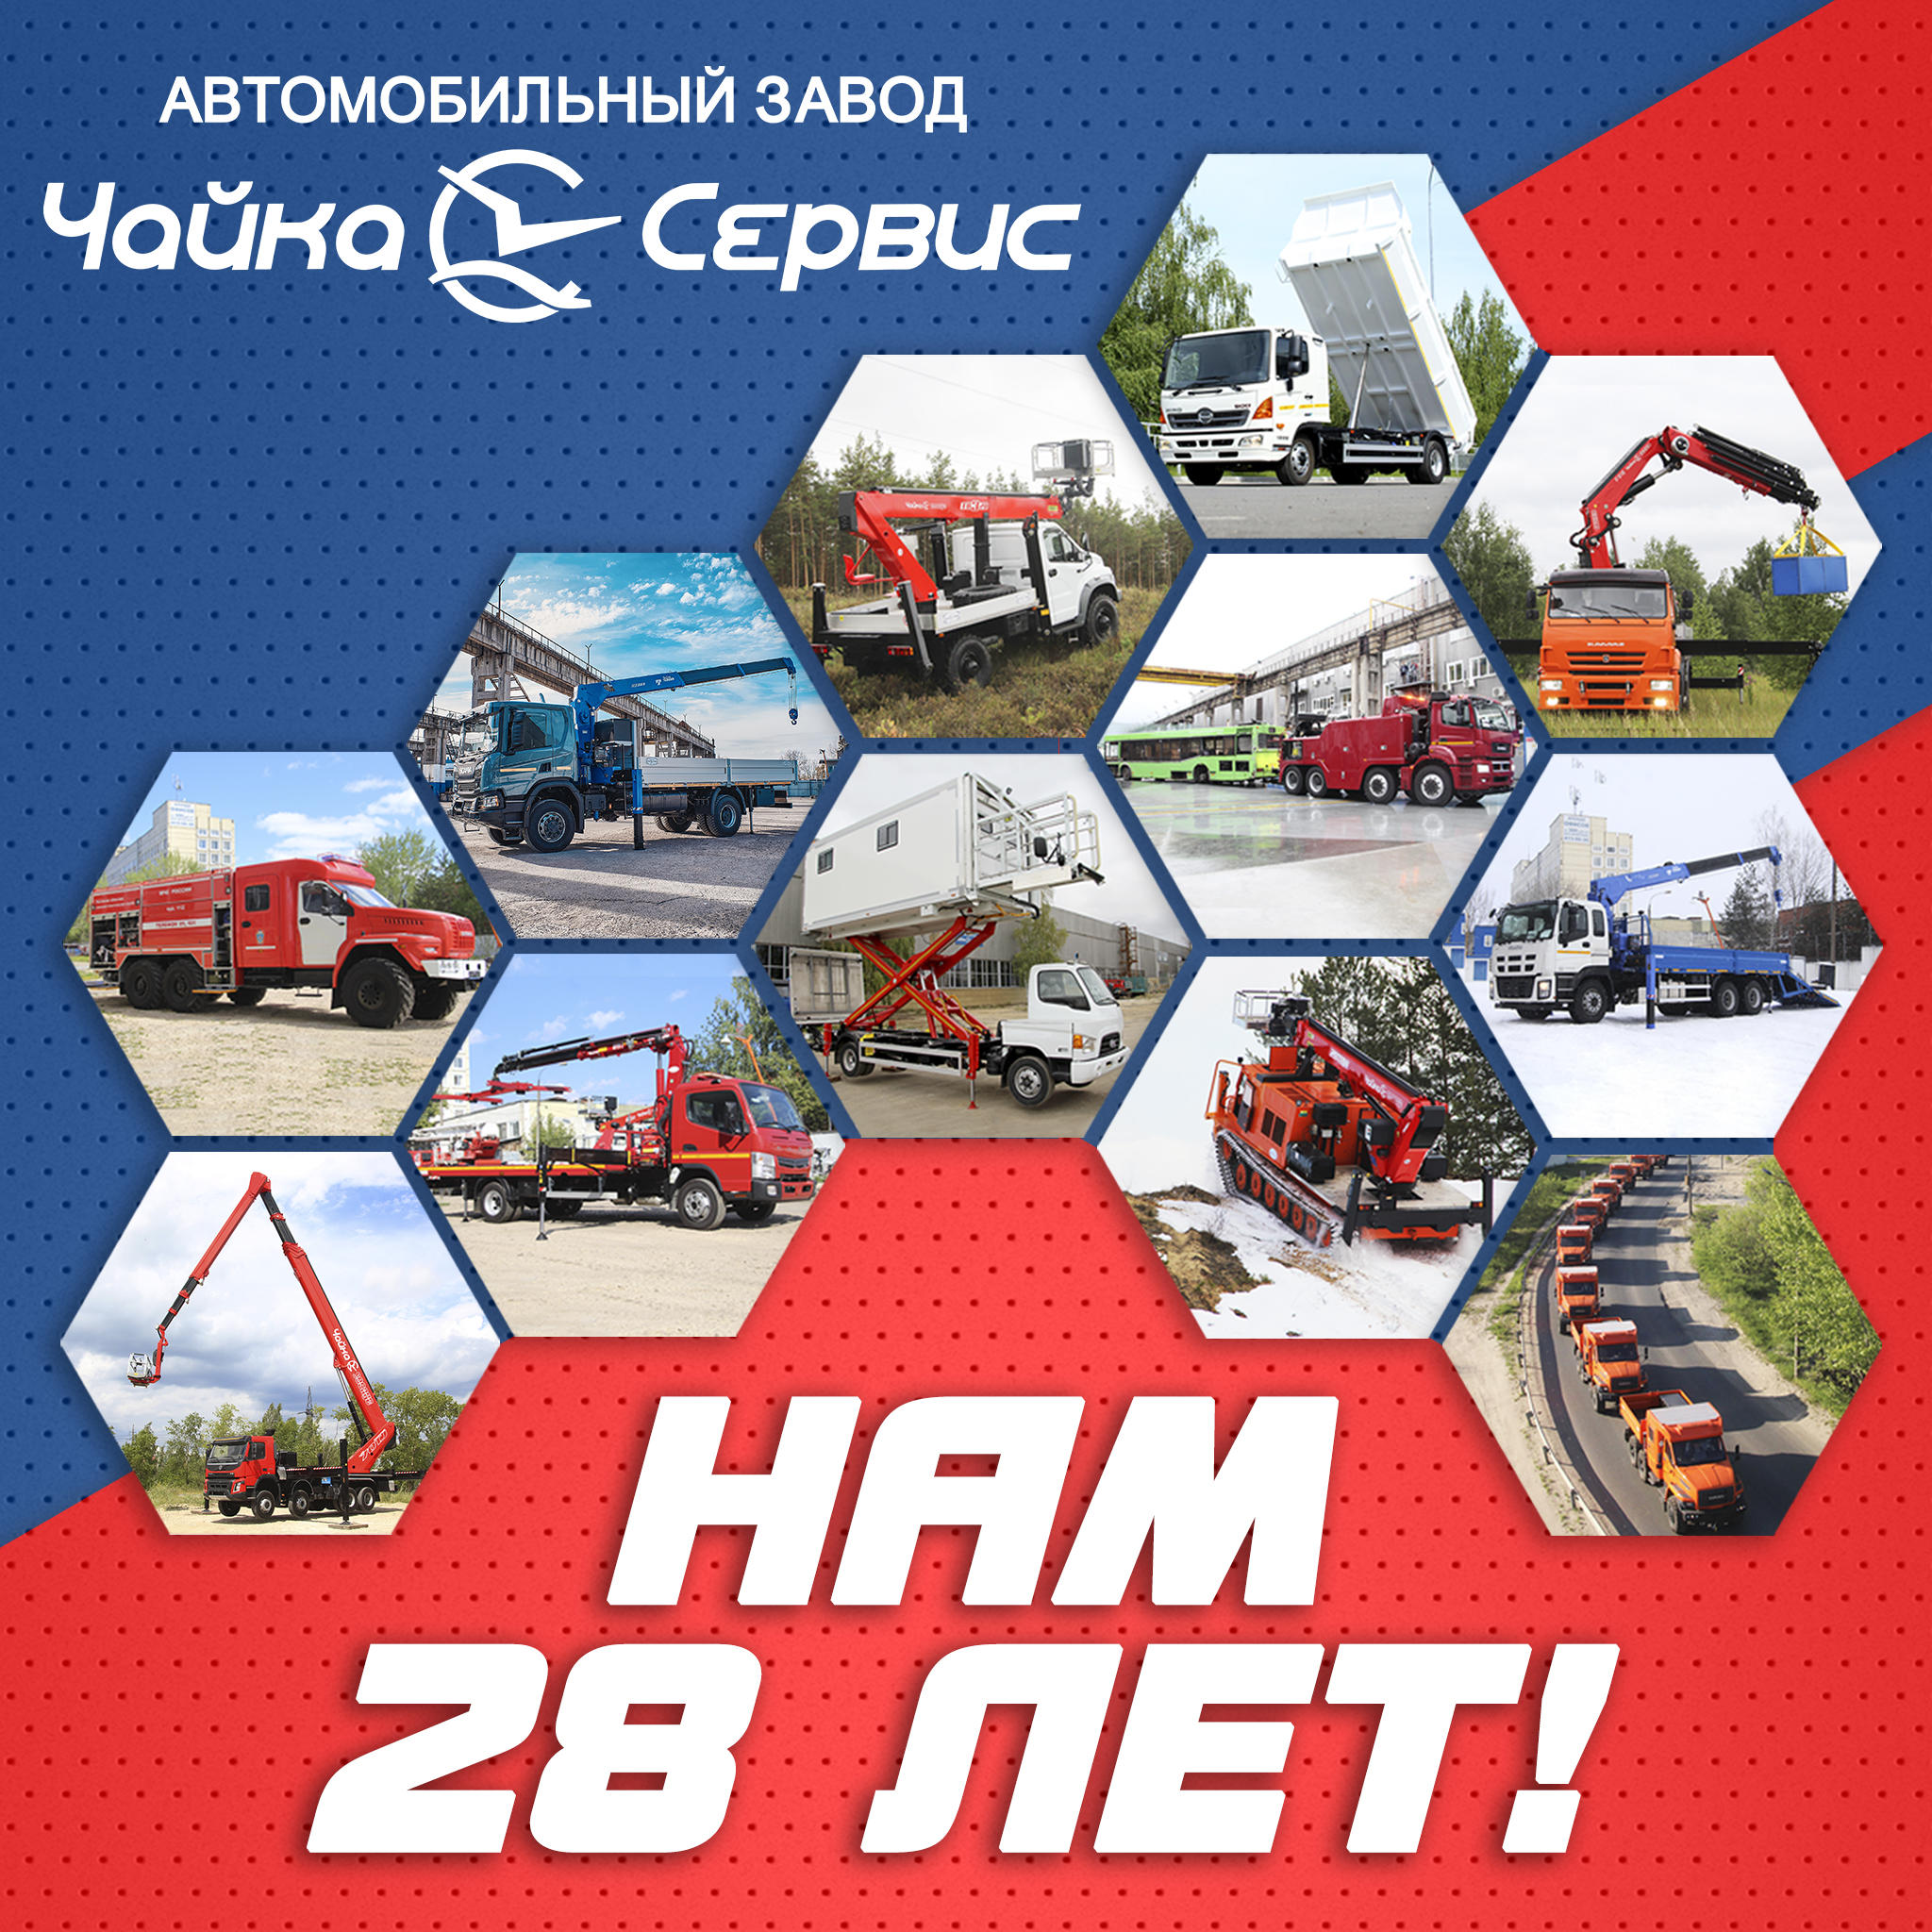  Поздравляем Автомобильный завод «Чайка-Сервис» с 28-летием!